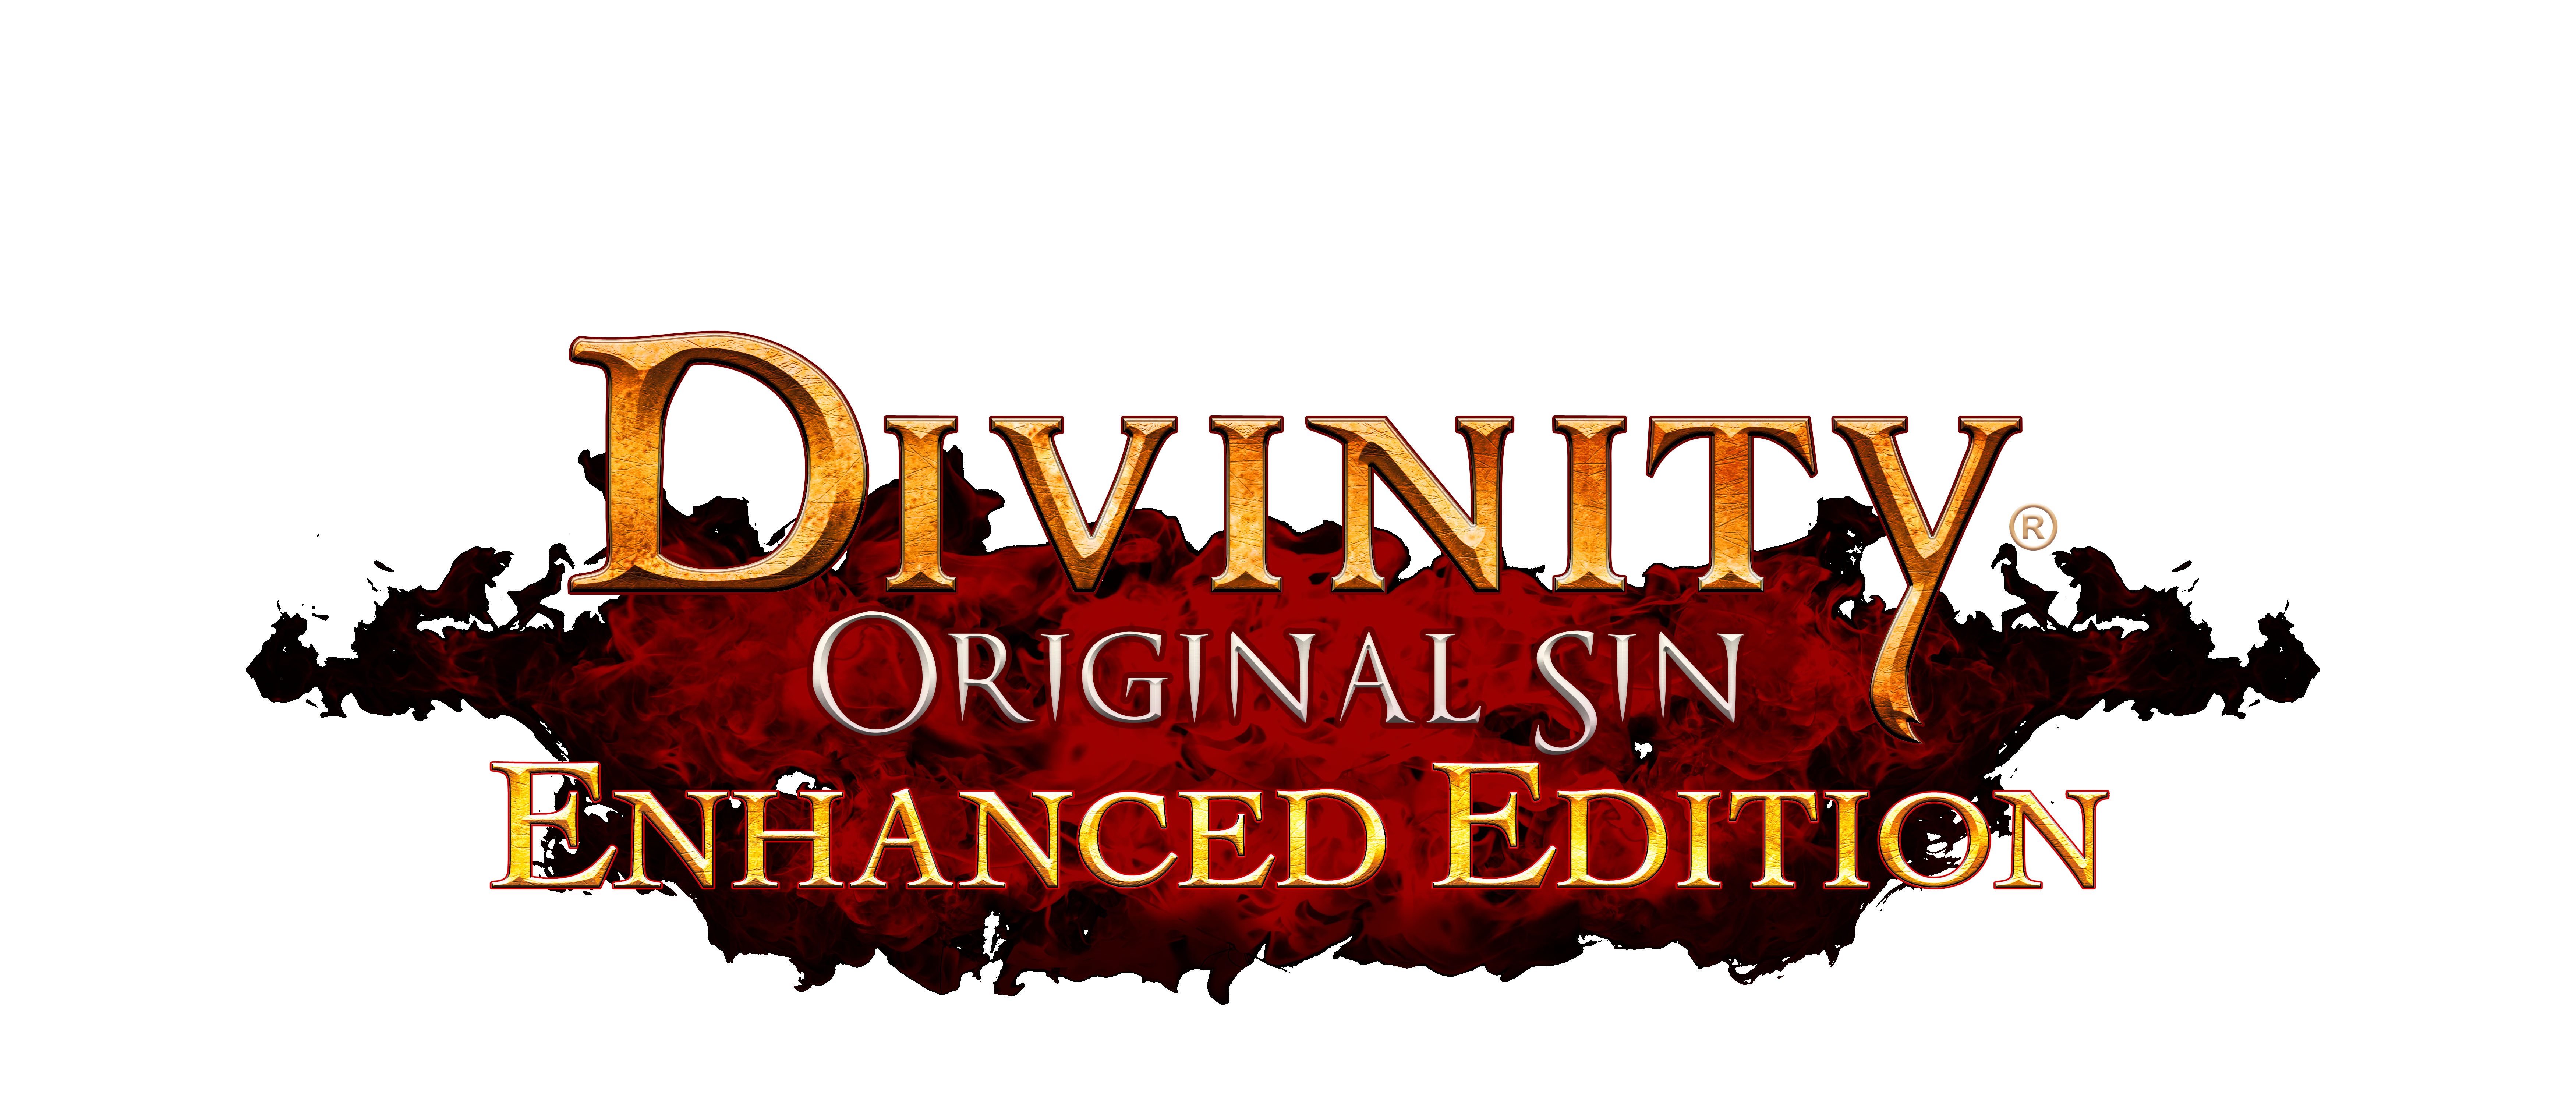 Divinity Original Sin 2 Wiki